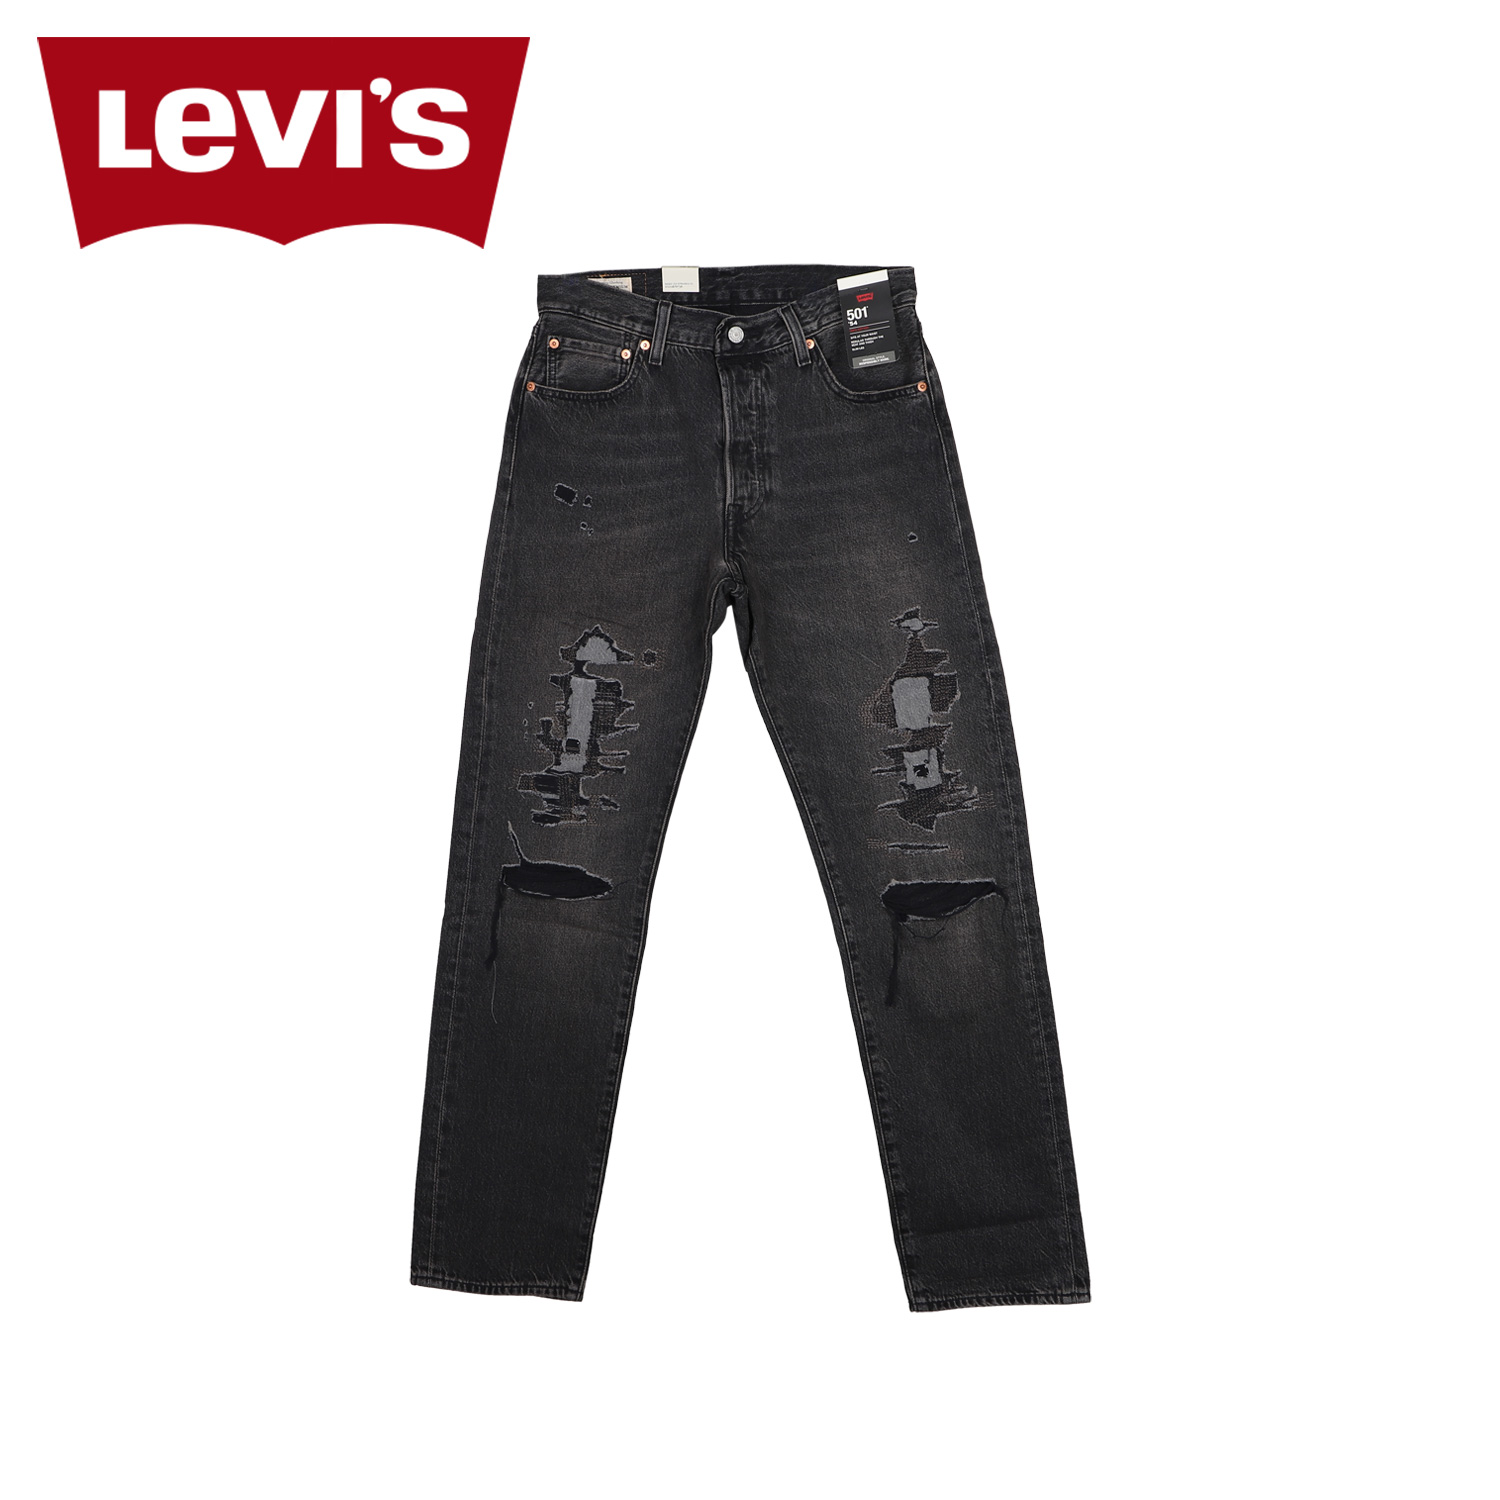 LEVIS リーバイス 501 54 ジーンズ デニム パンツ ジーパン メンズ 赤耳 ブラック 黒 A4677-0001